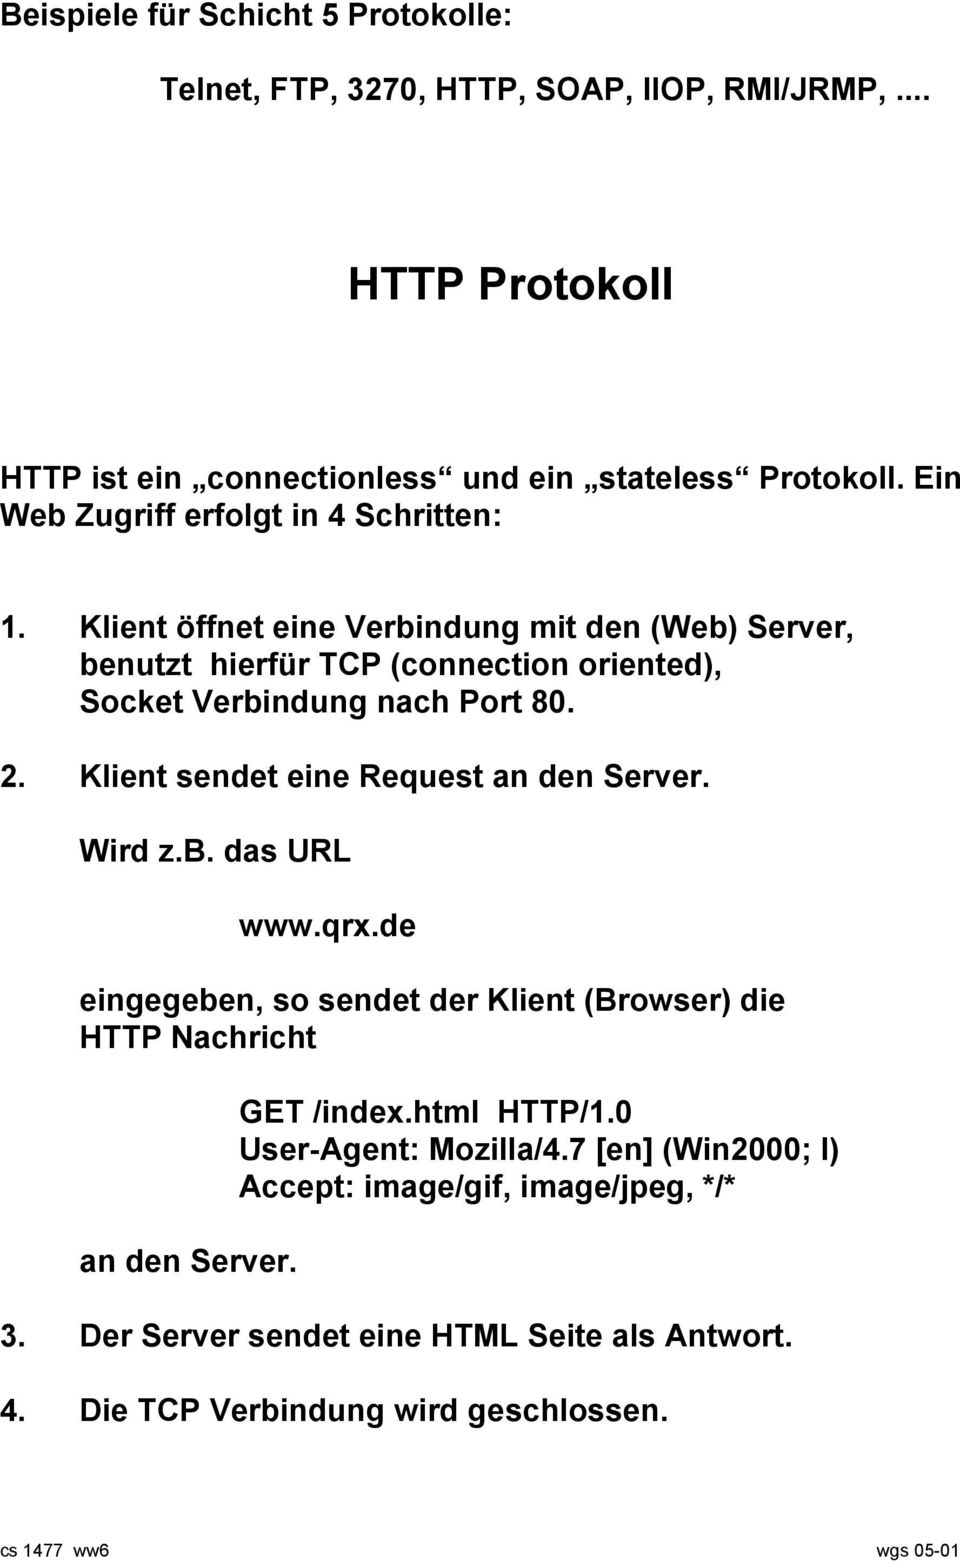 Klient sendet eine Request an den Server. Wird z.b. das URL www.qrx.de eingegeben, so sendet der Klient (Browser) die HTTP Nachricht an den Server. GET /index.html HTTP/1.